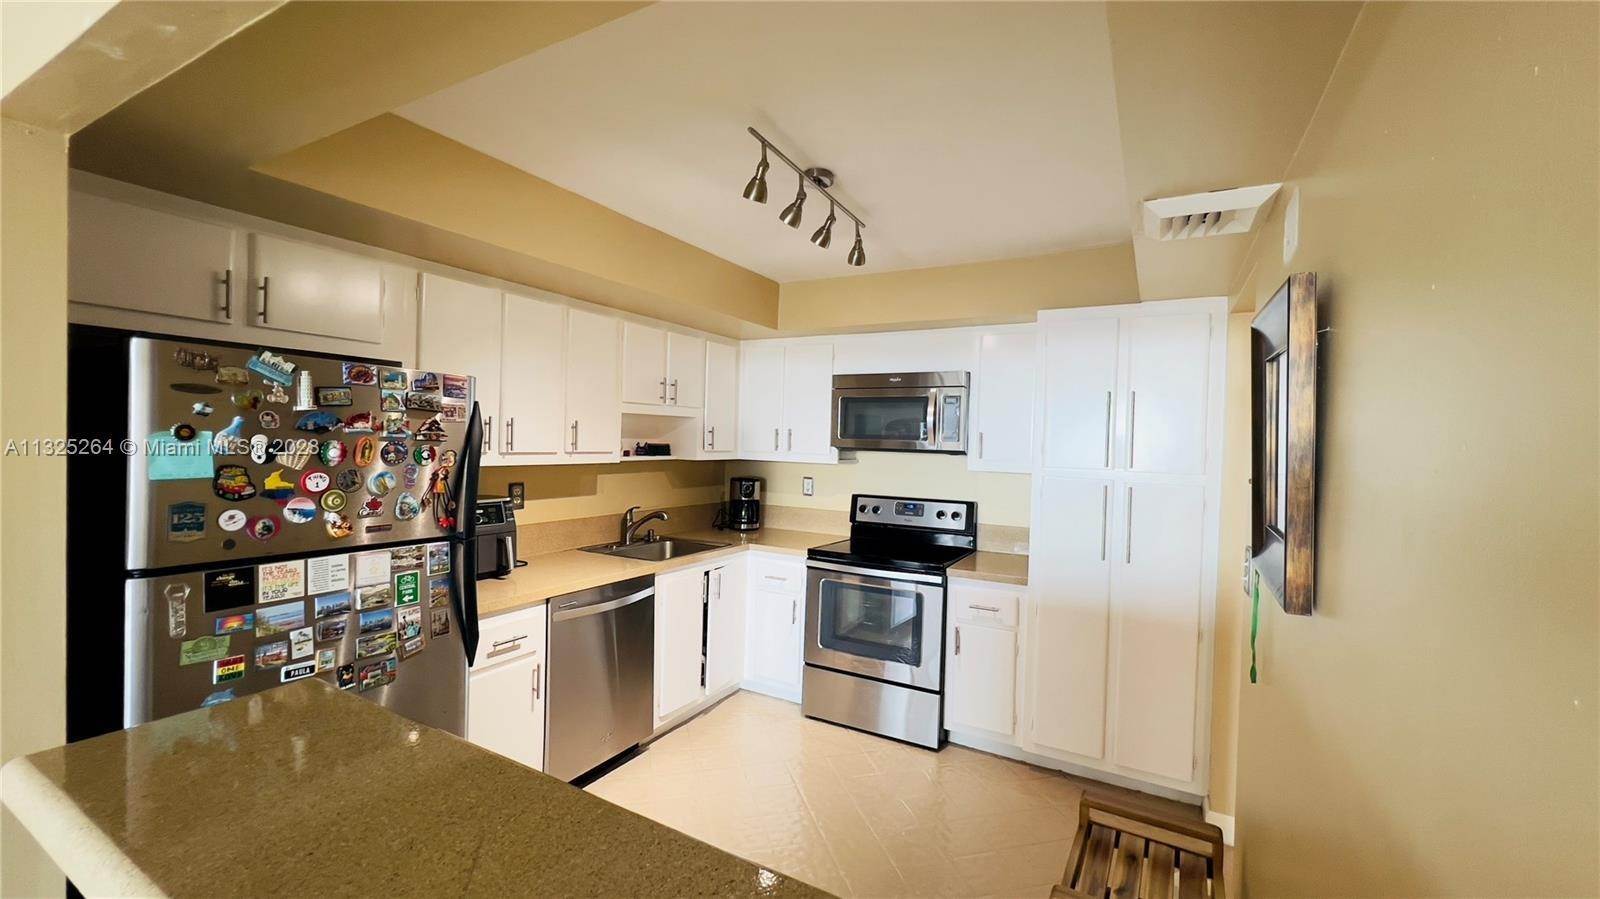 9. Condominium for Sale at Aventura, FL 33160